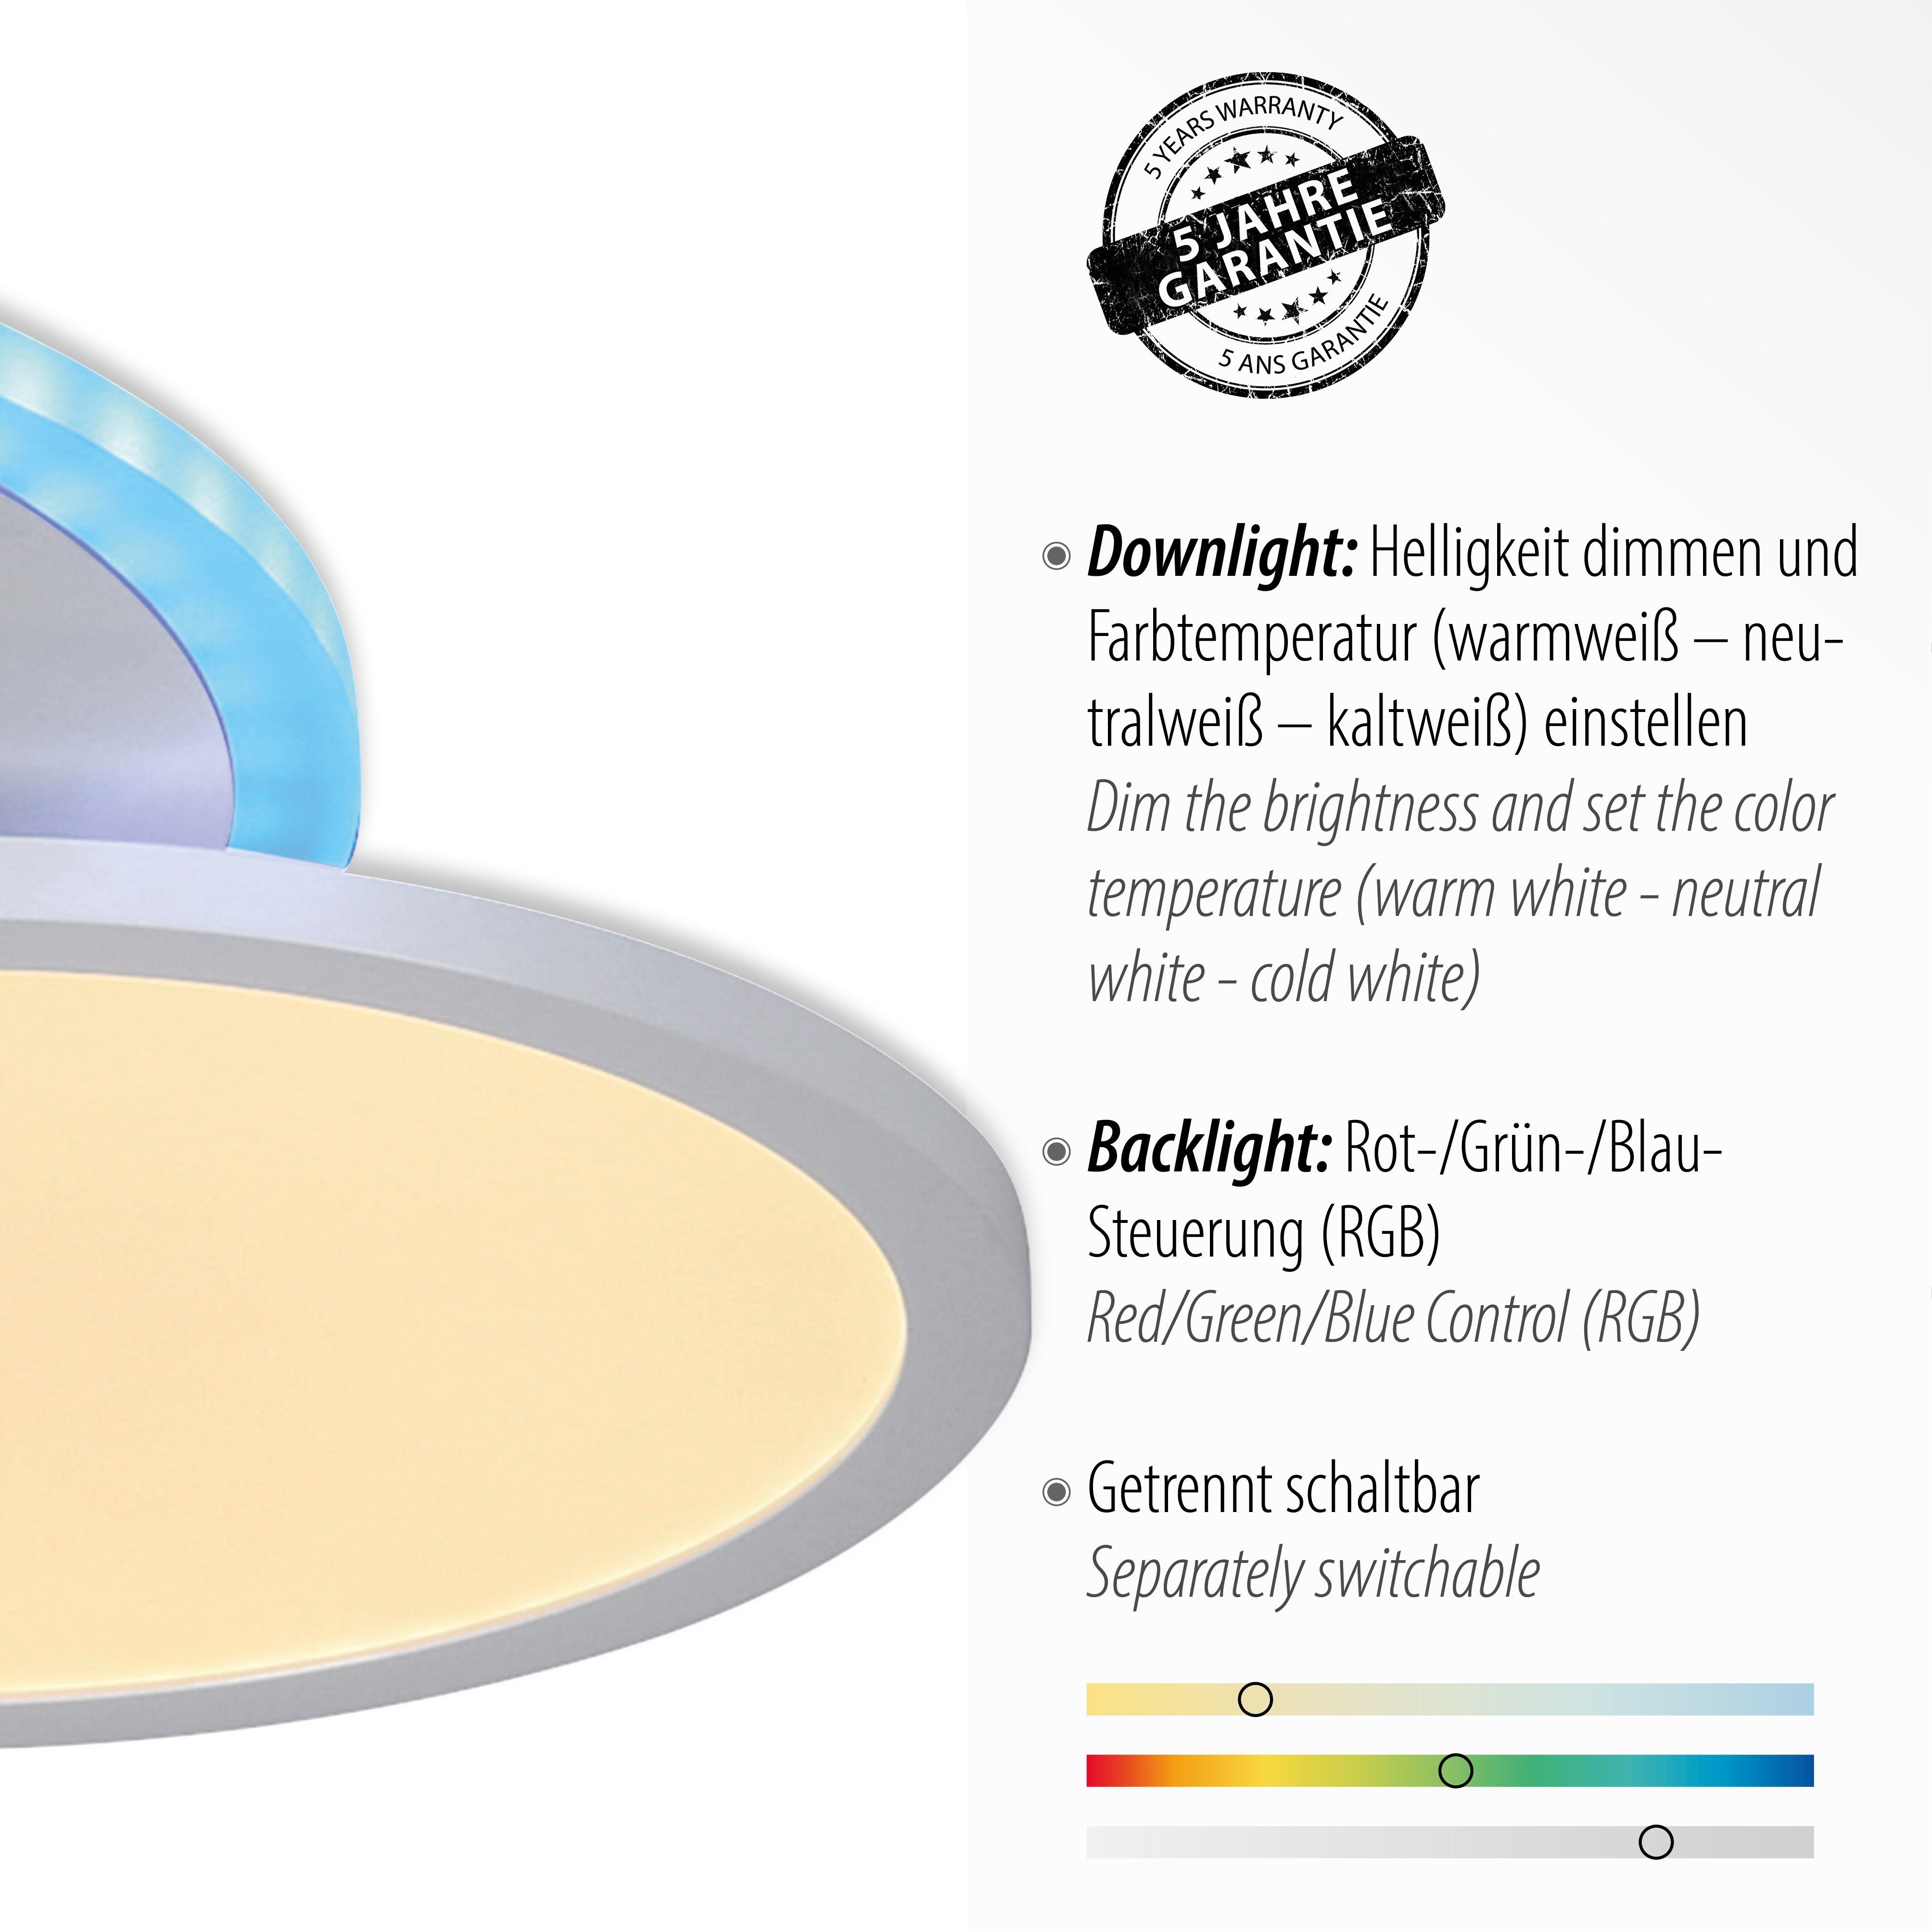 LED, white, - Deckenleuchte CCT über ARENDA, tunable warmweiß - Leuchten RGB, integriert, Direkt dimmbar kaltweiß, LED fest Fernbedienung